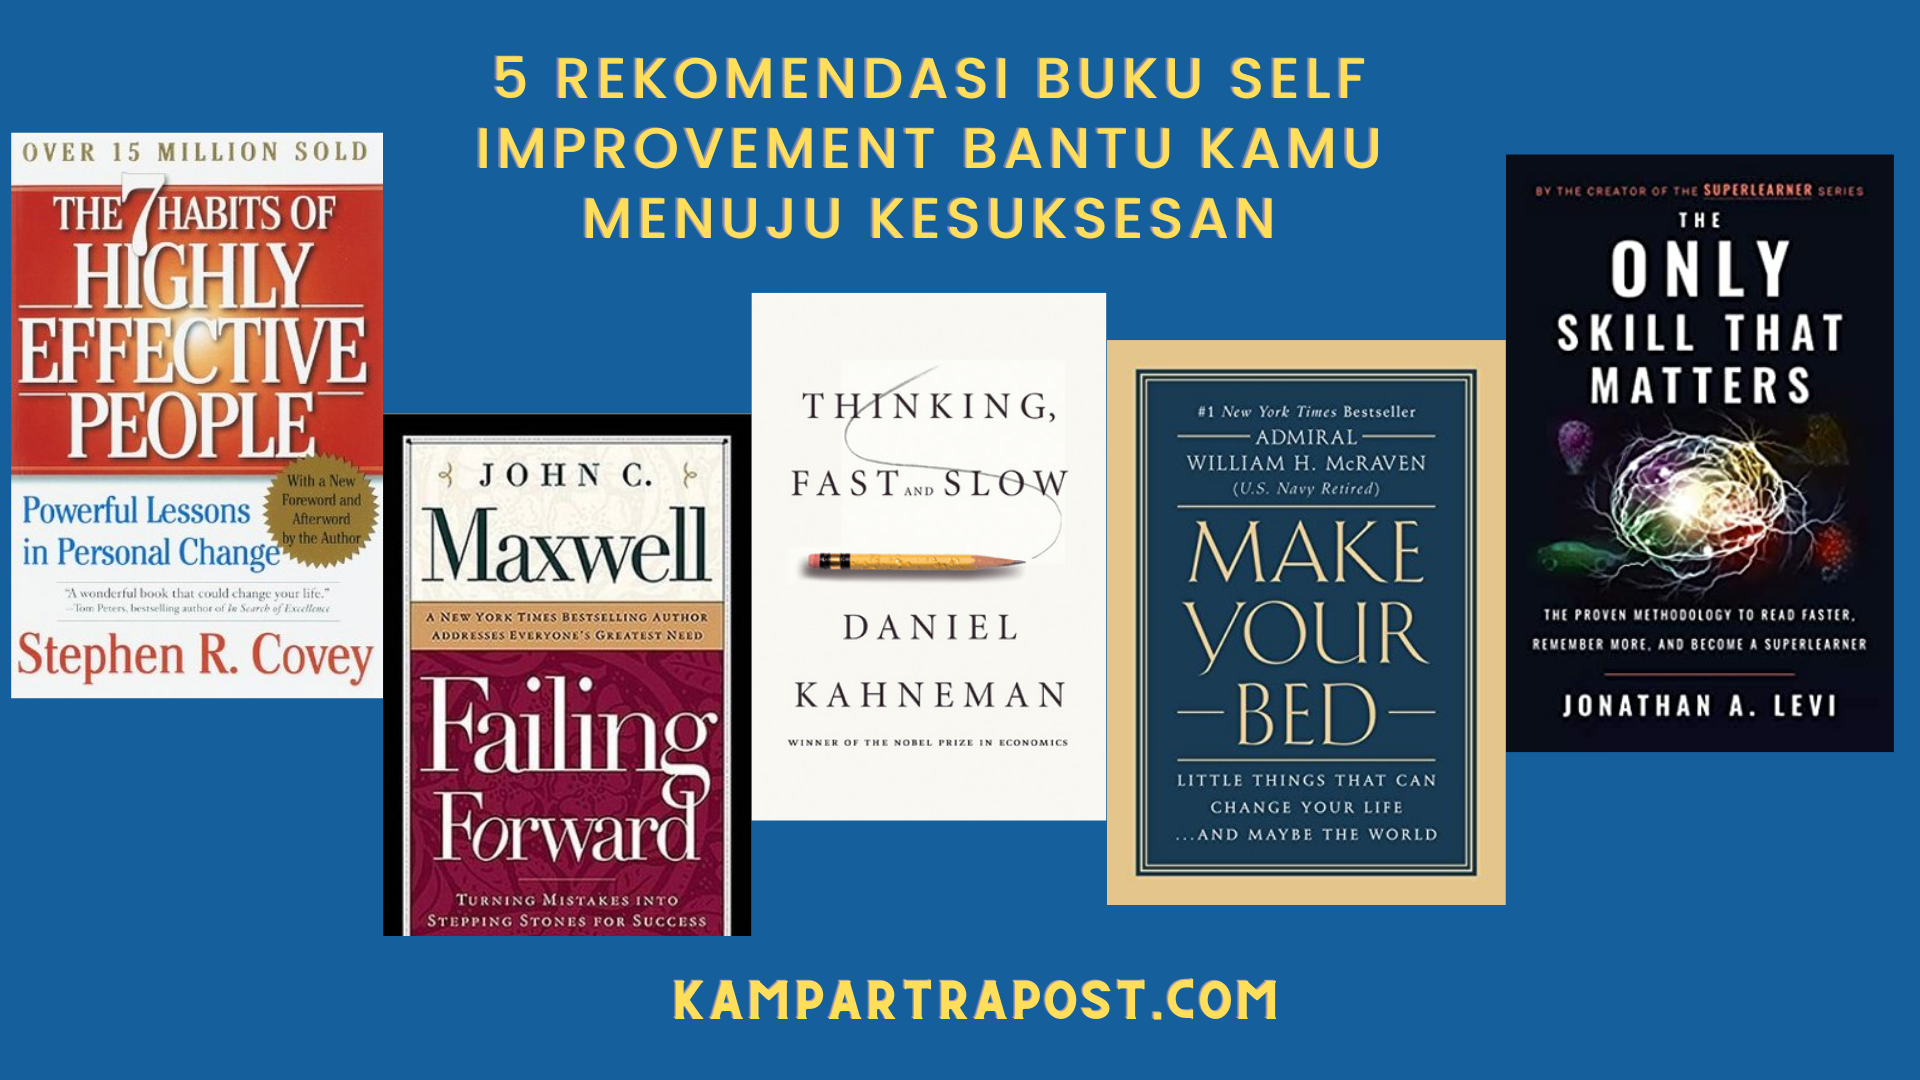 5 Rekomendasi Buku Self Improvement Bantu Kamu Menuju Kesuksesan